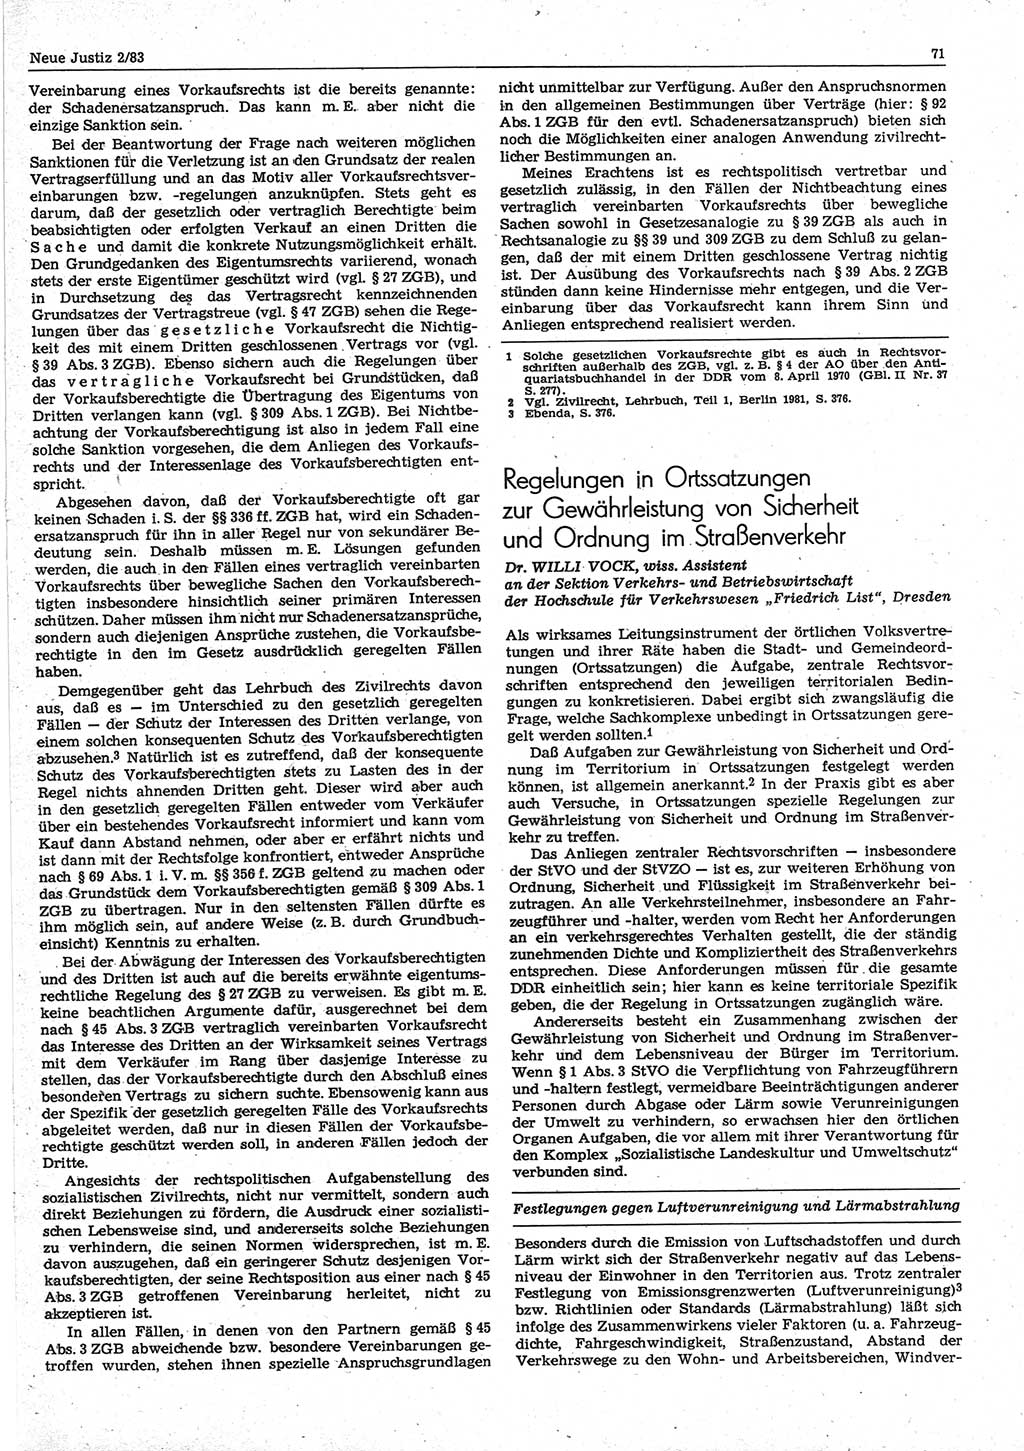 Neue Justiz (NJ), Zeitschrift für sozialistisches Recht und Gesetzlichkeit [Deutsche Demokratische Republik (DDR)], 37. Jahrgang 1983, Seite 71 (NJ DDR 1983, S. 71)